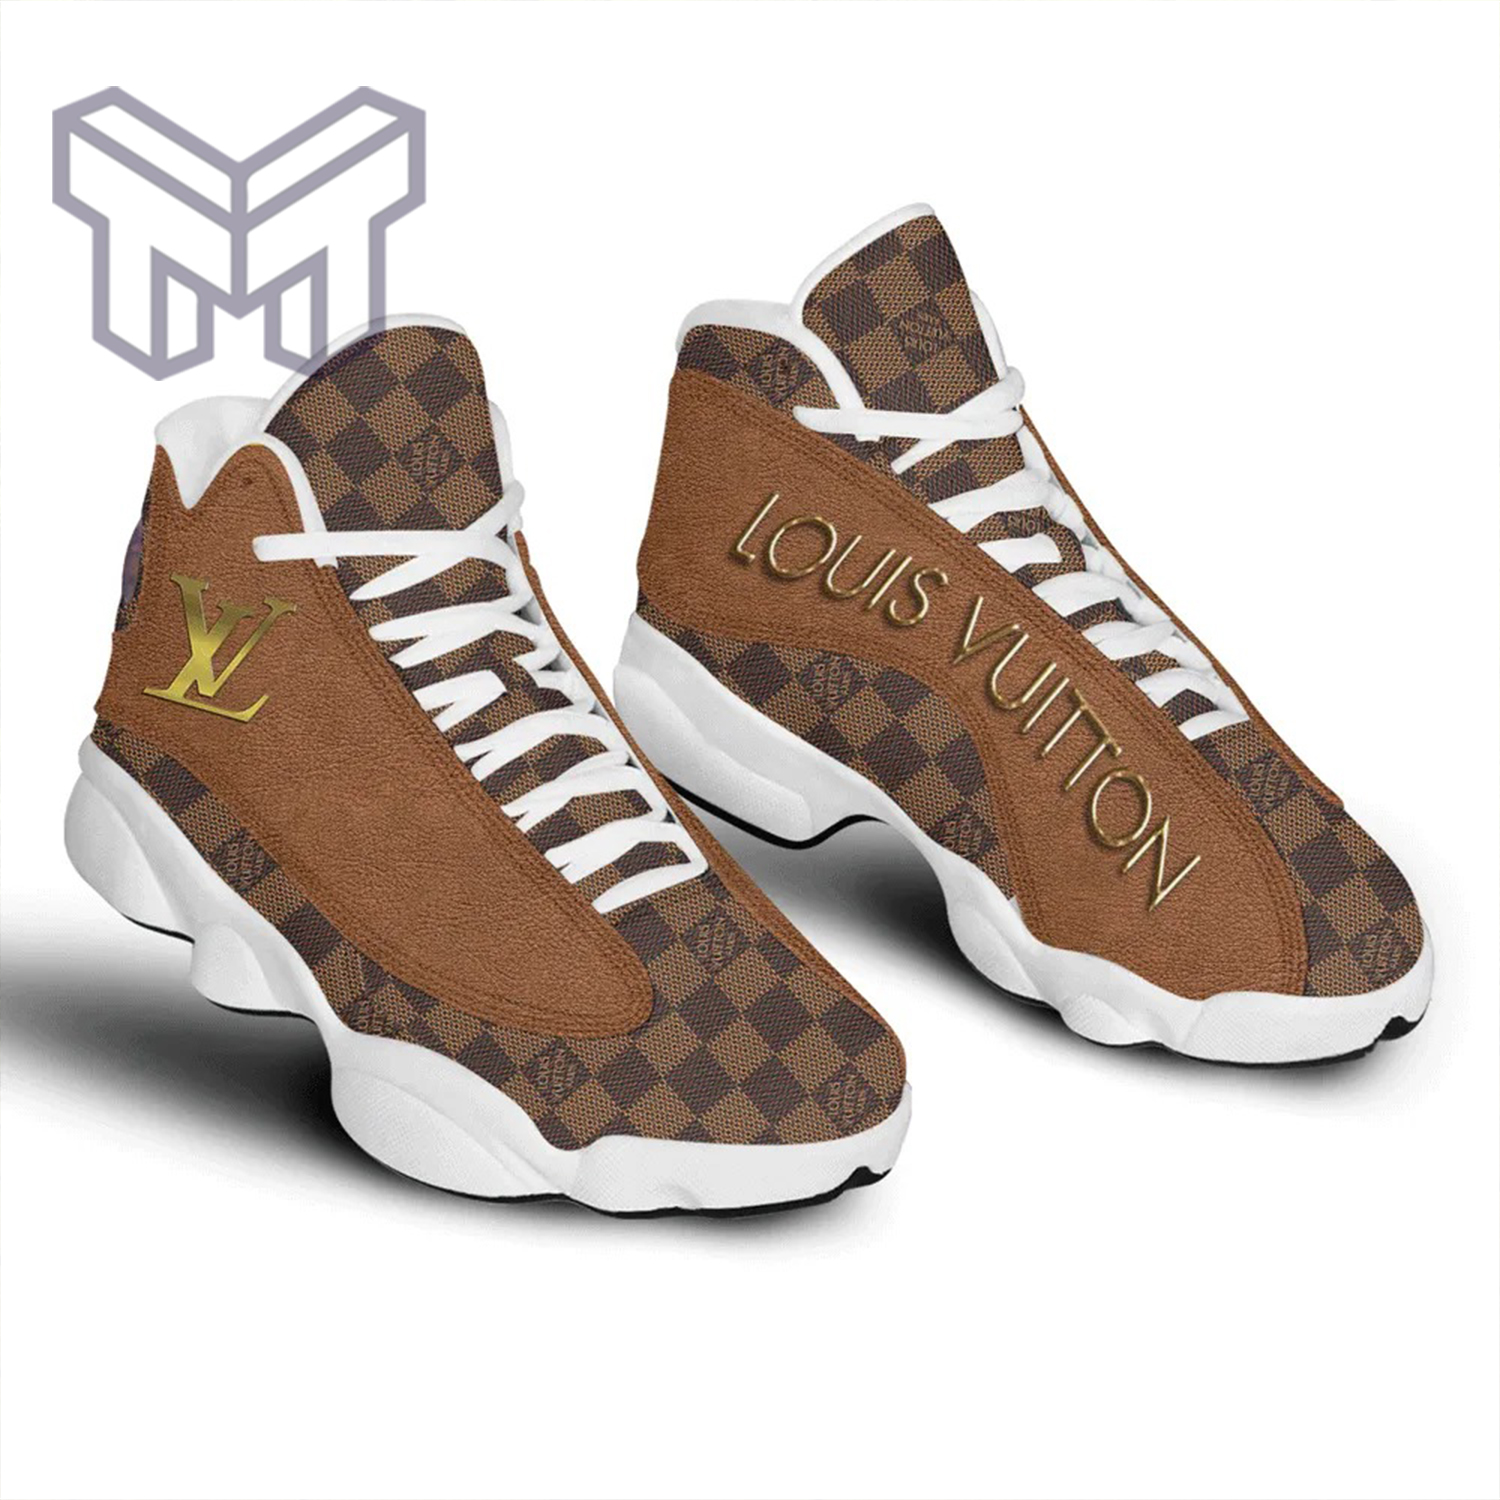 Brown Louis Vuitton air jordan 13 custom shoes sneakers